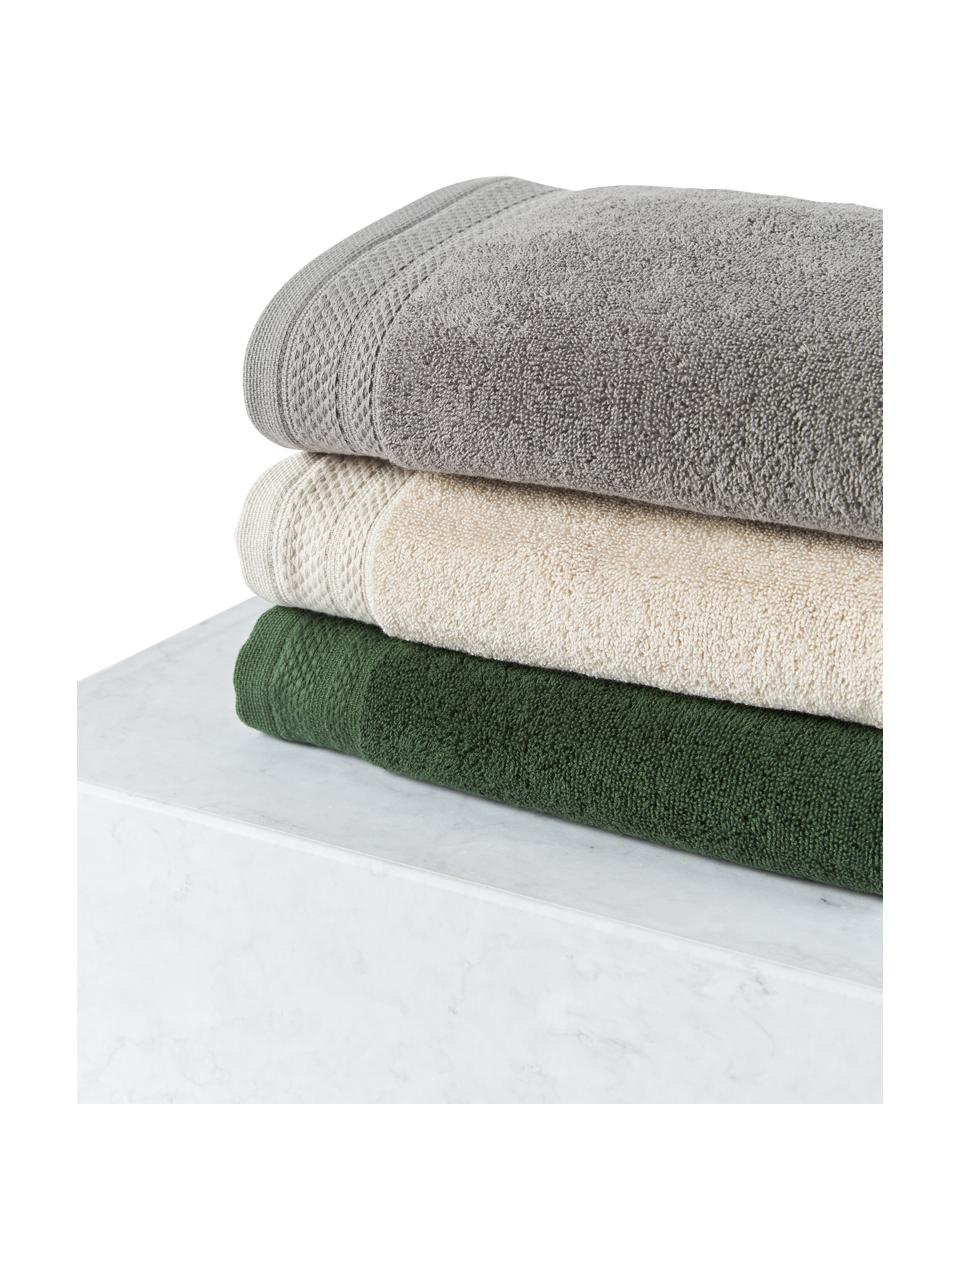 Súprava uterákov z organickej bavlny Premium, 6 diely, Tmavosivá, Súprava s rôznymi veľkosťami